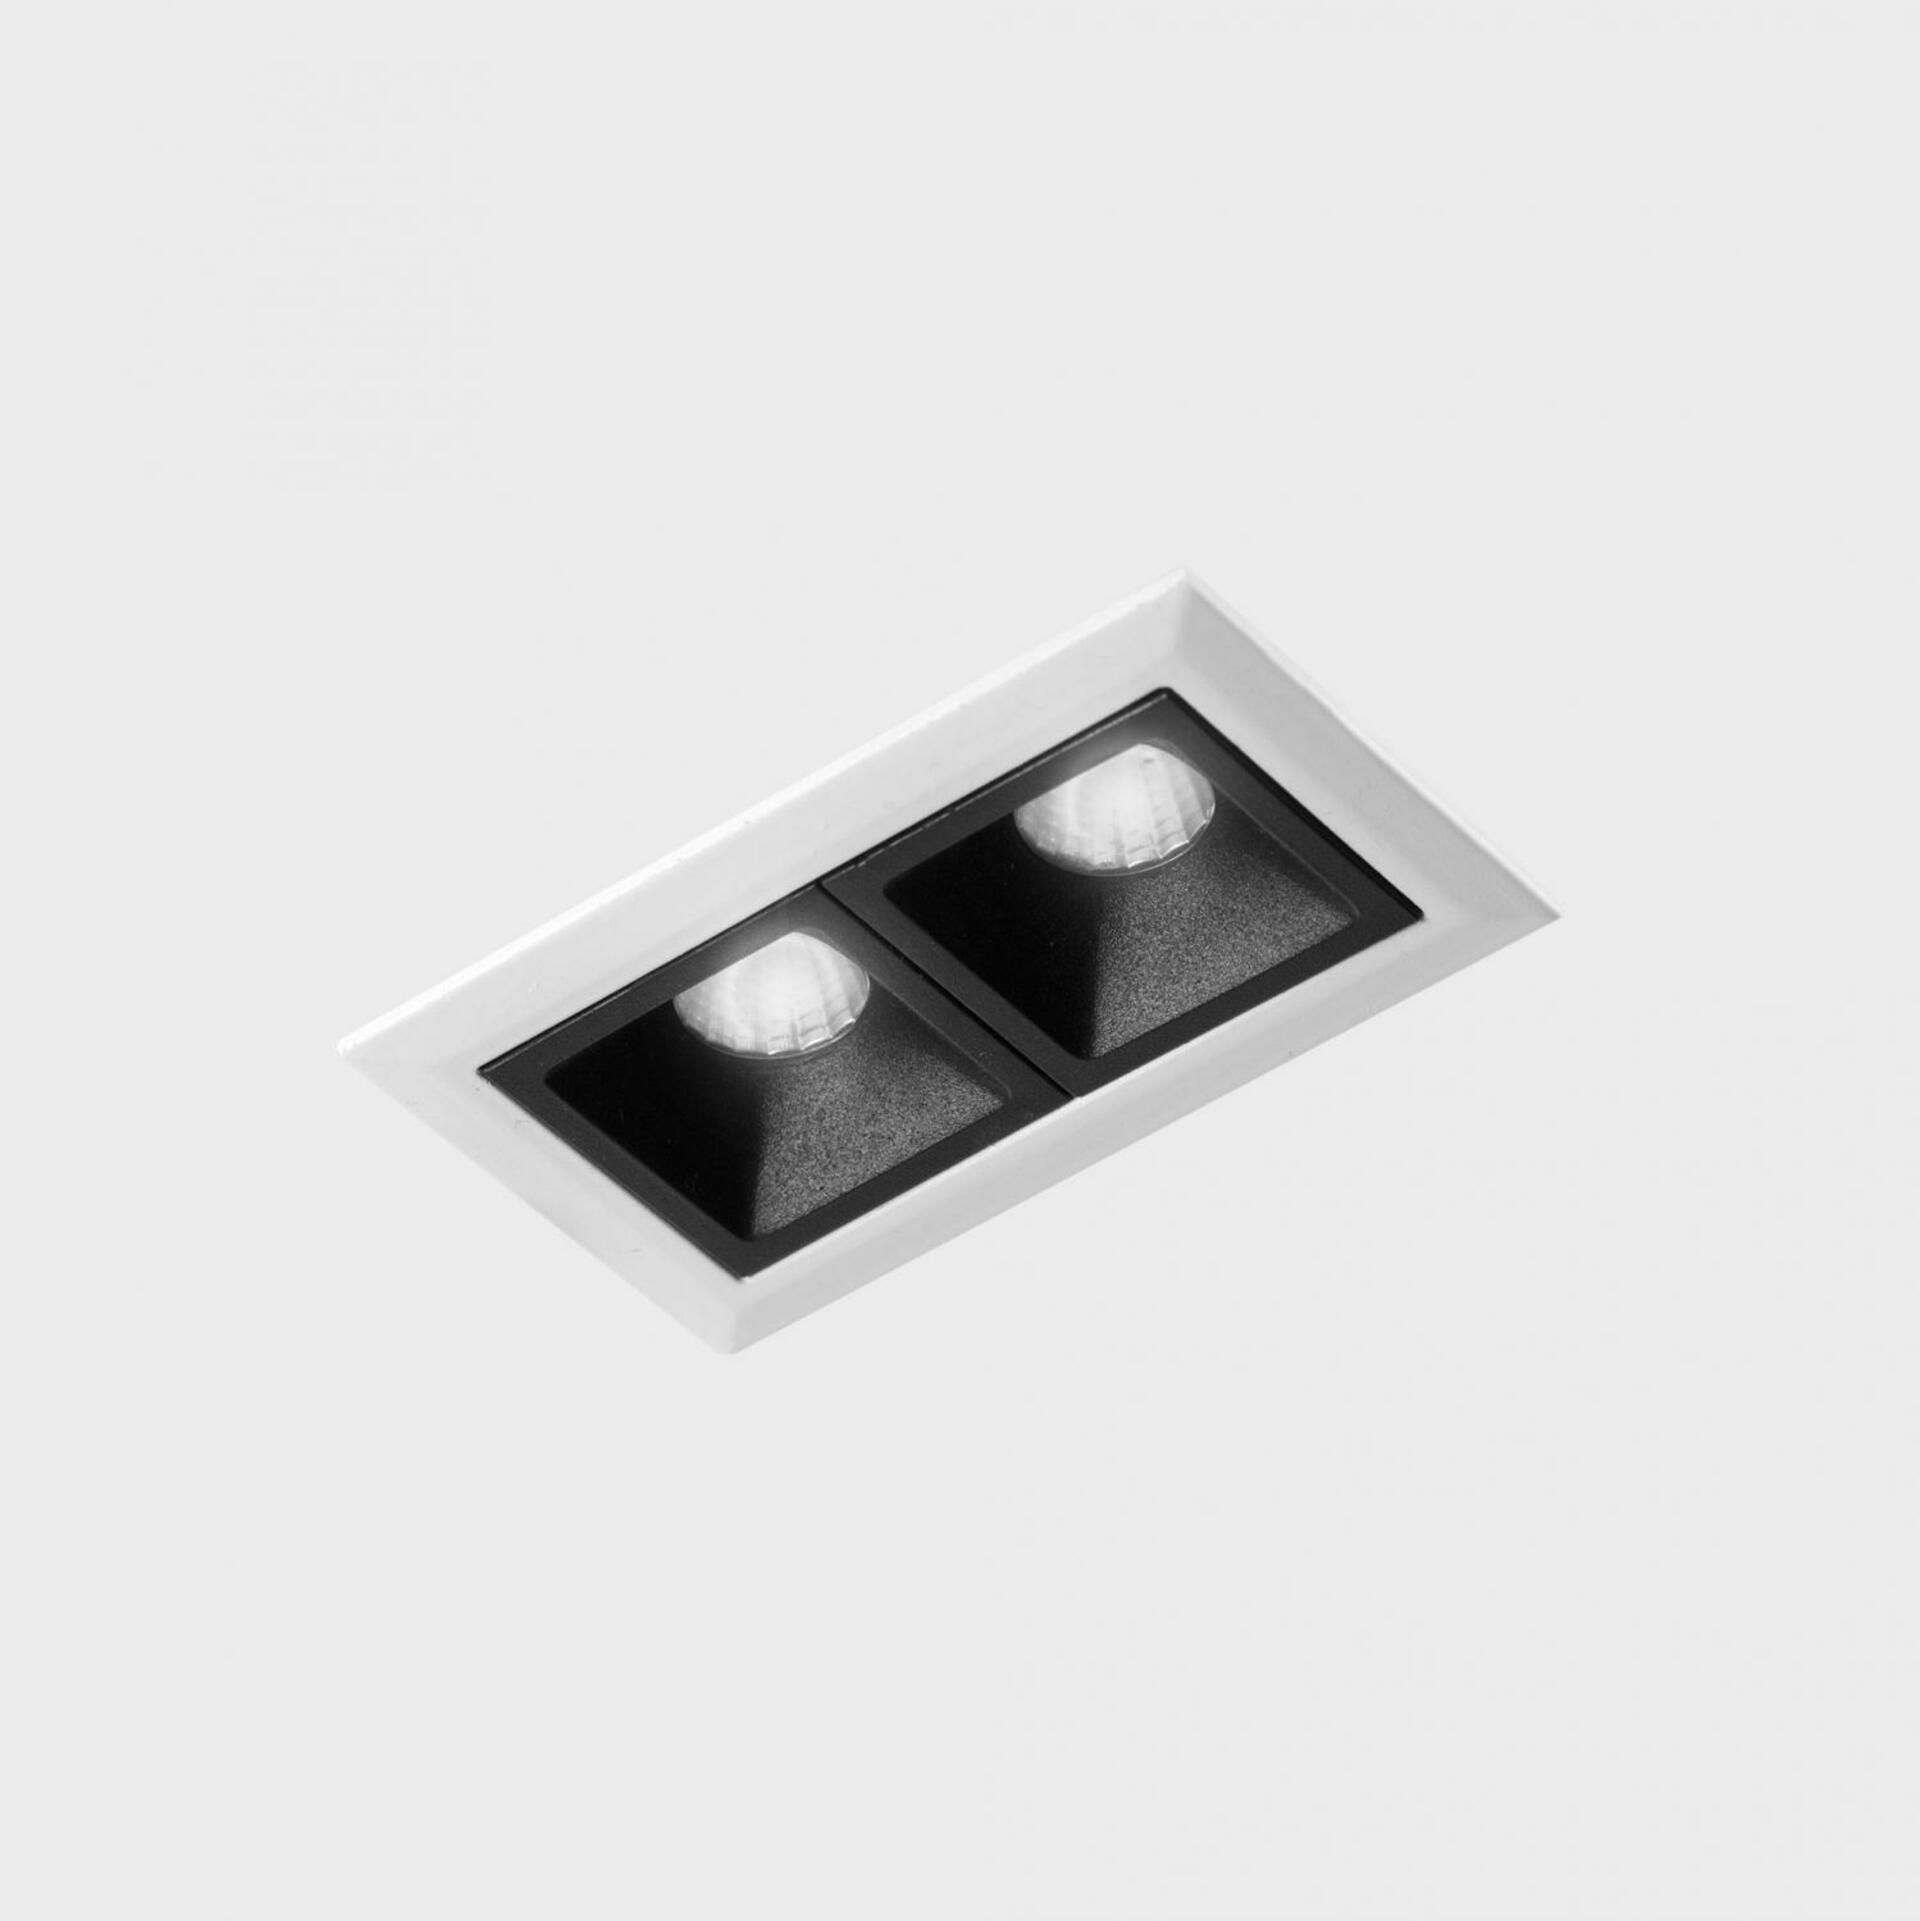 KOHL LIGHTING KOHL-Lighting NSES zapuštěné svítidlo s rámečkem 75x45 mm bílá-černá 4 W CRI 90 3000K 1.10V